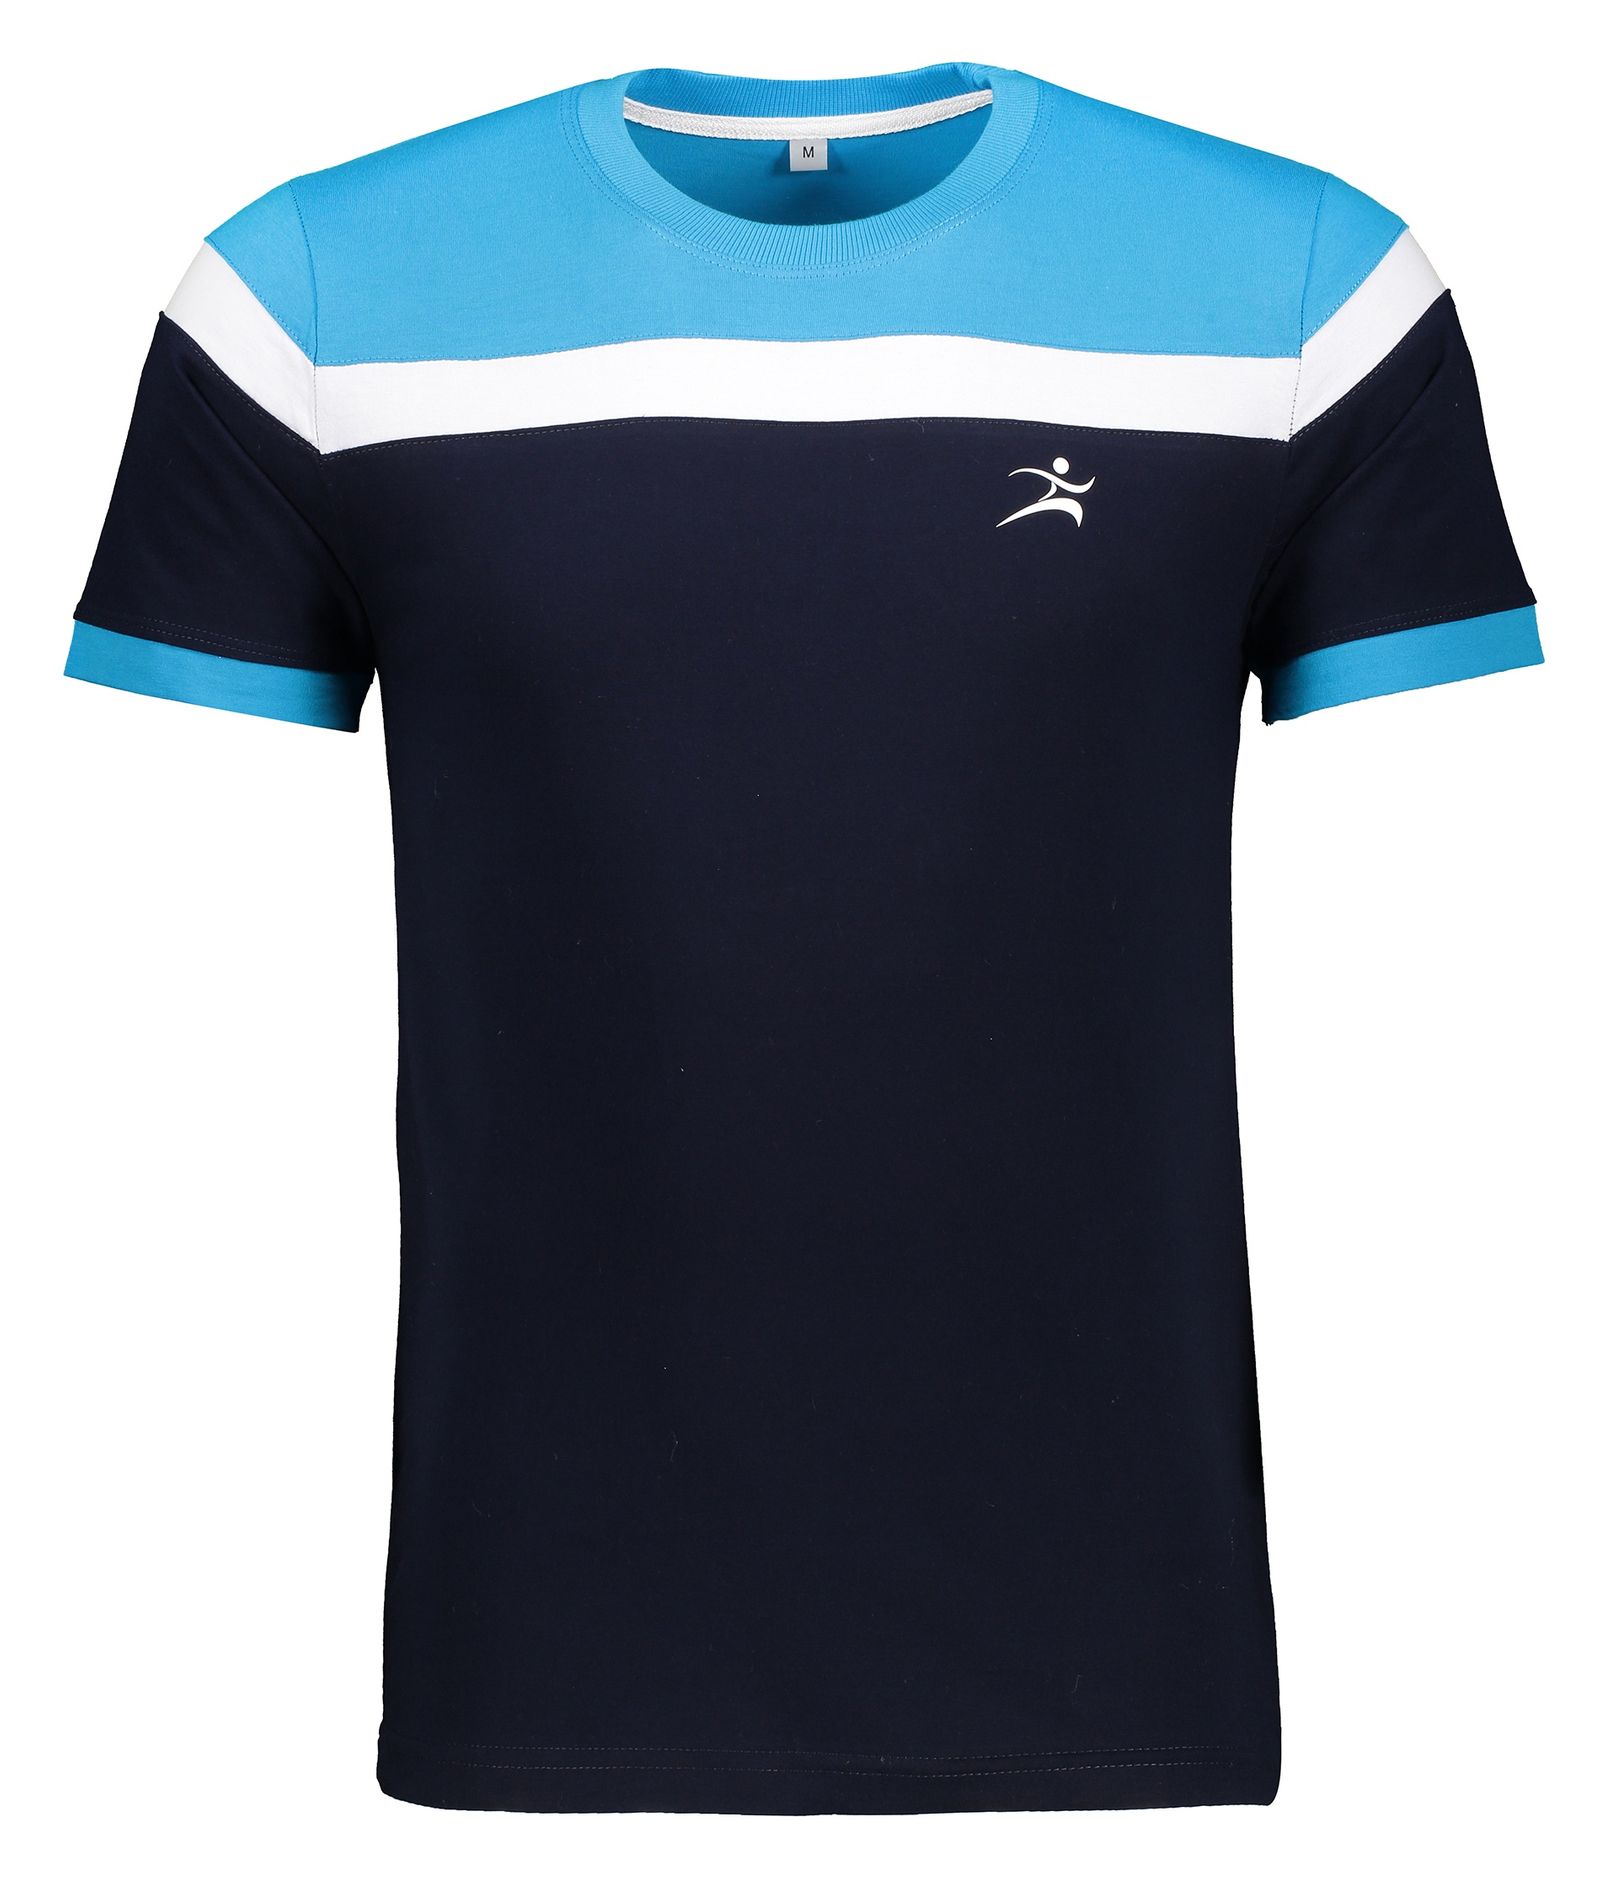 تی شرت ورزشی مردانه اسپرت من مدل k23-18 - آبی - 1